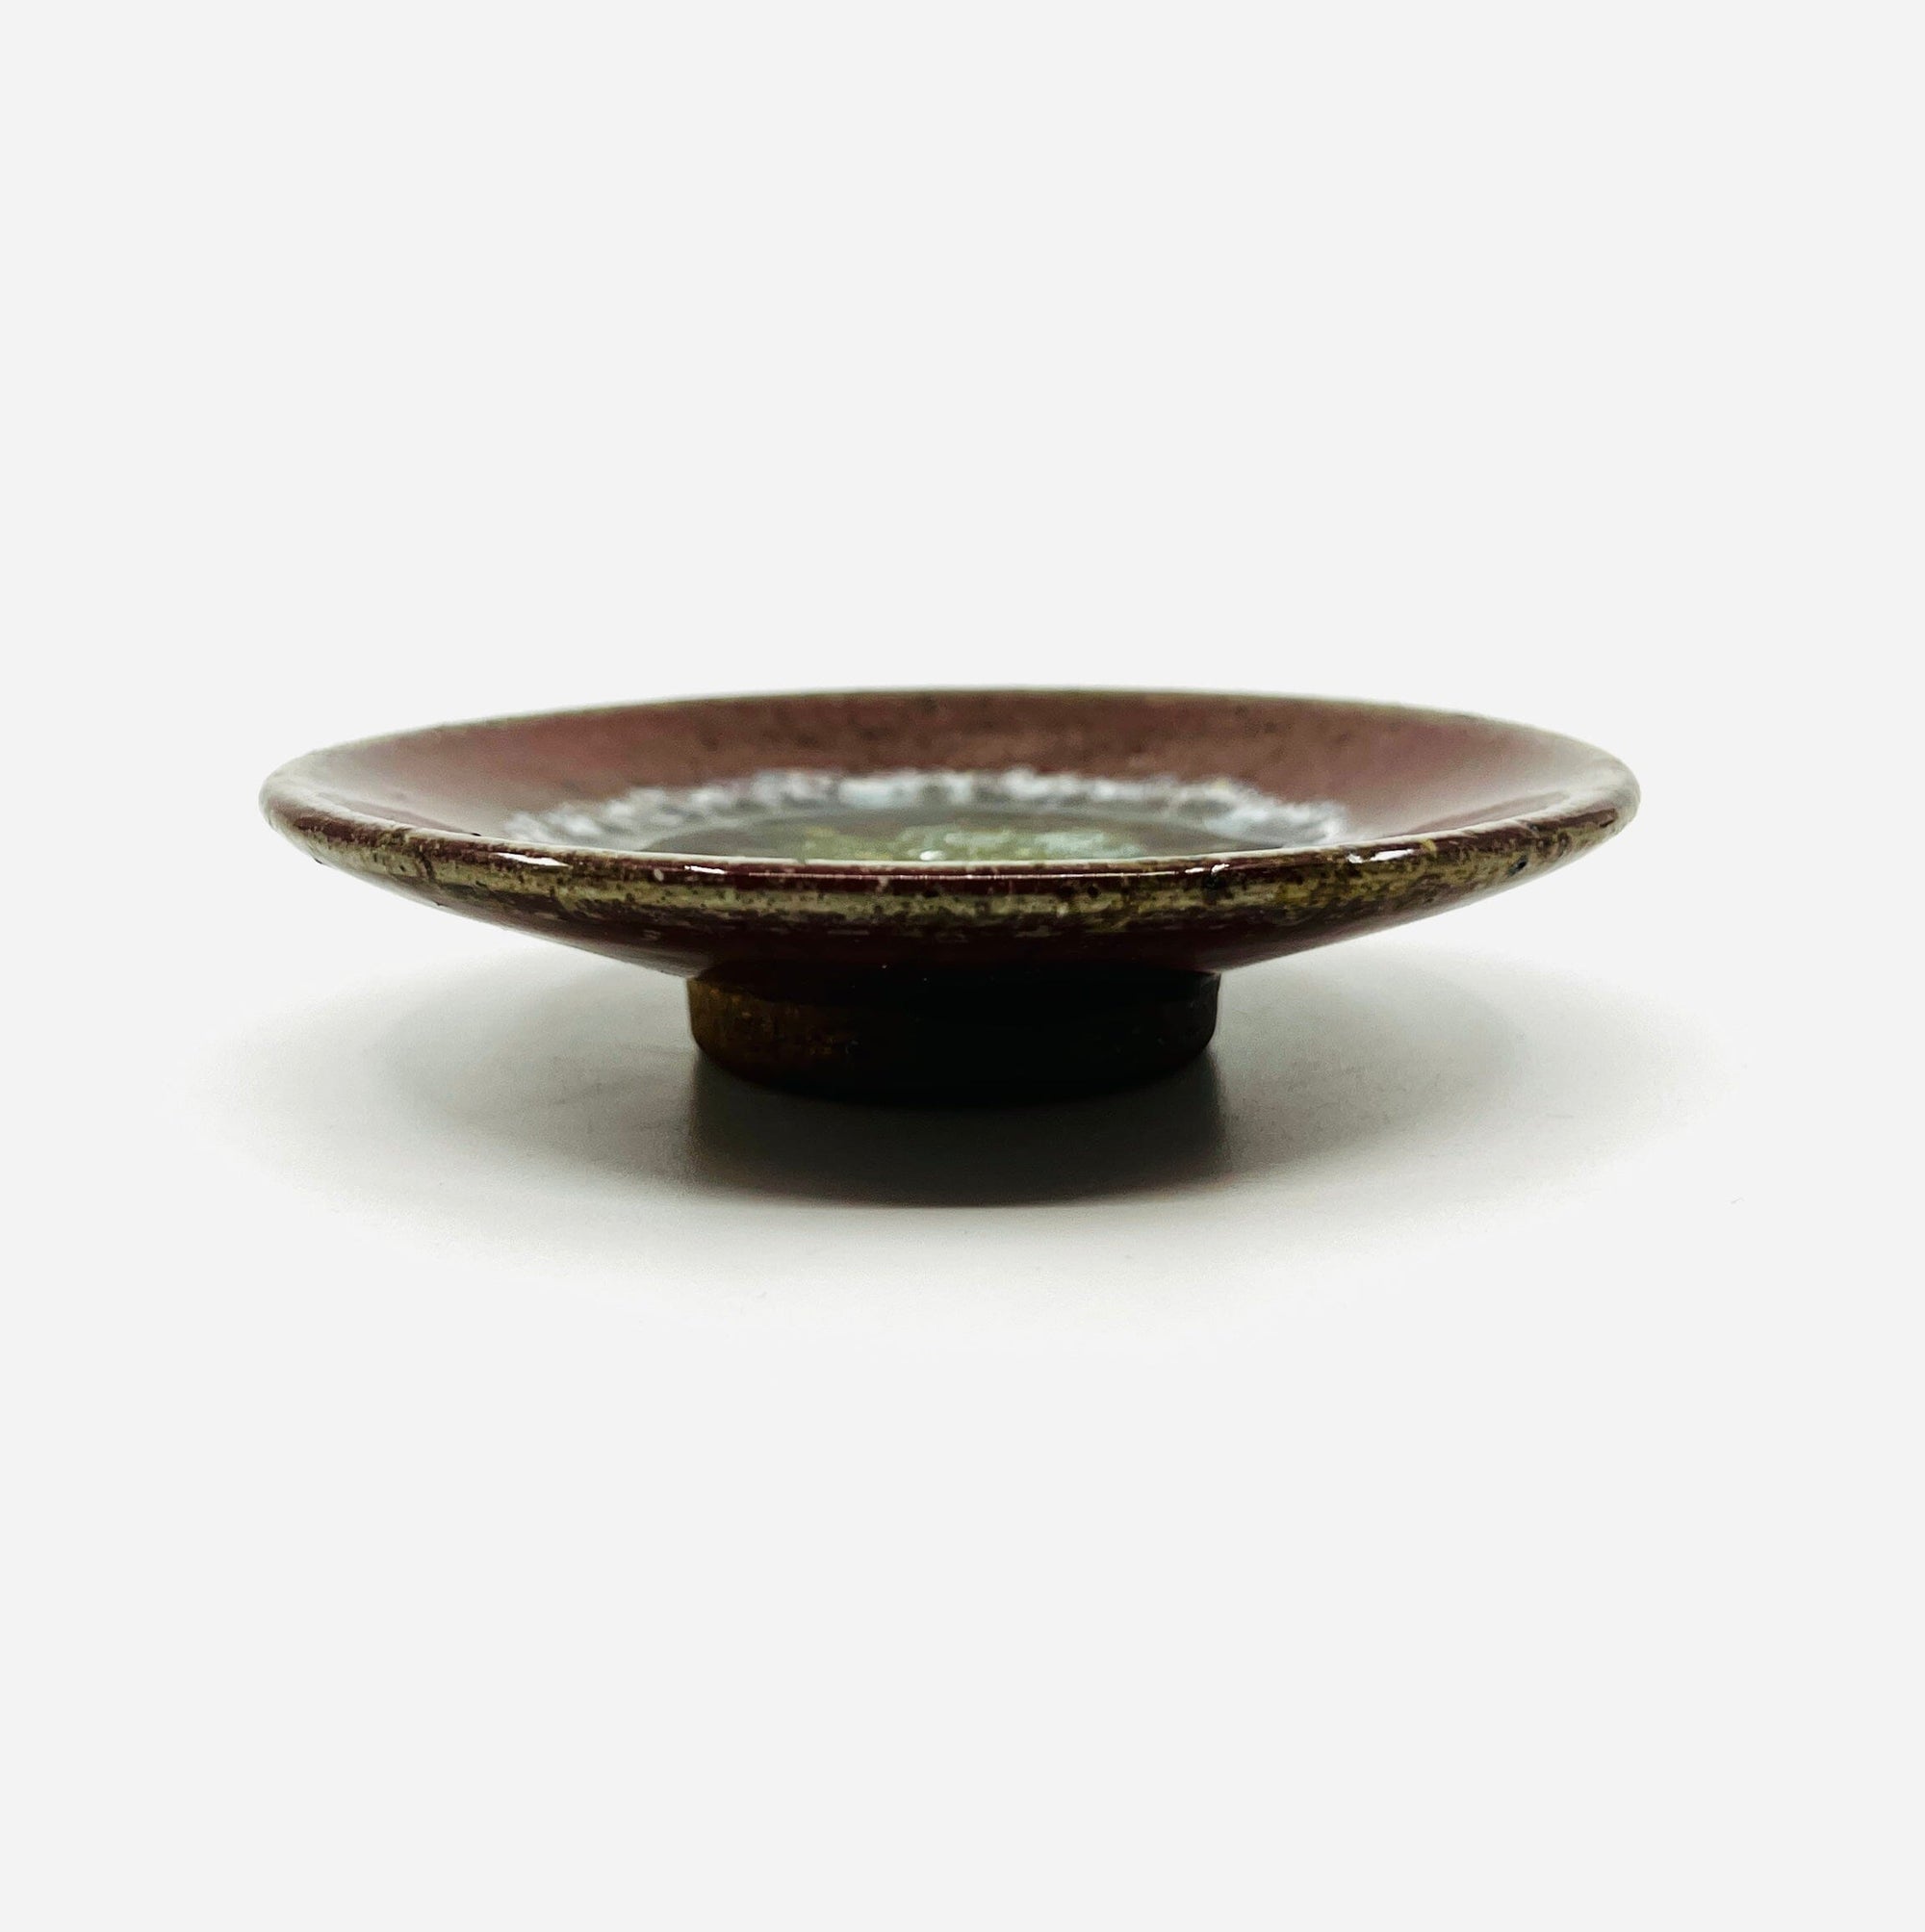 Small Ceramic and Glass Dish, Cinnamon Decor Dock 6 